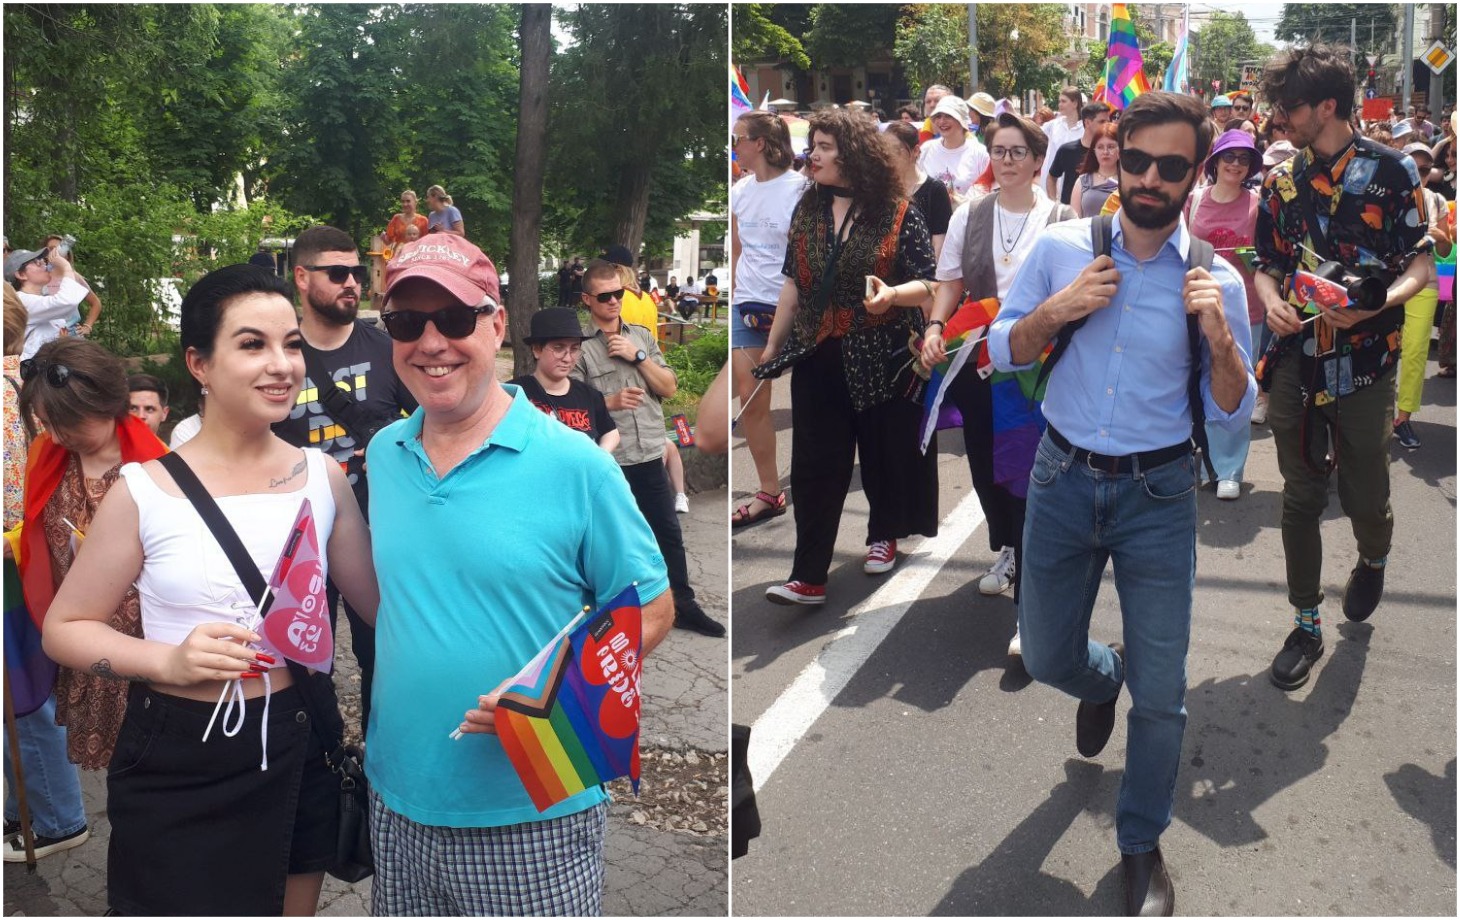 Молдавская общественность не готова к узаконивания однополых браков,  считает депутат PAS, поддерживающий ЛГБТ-сообщество